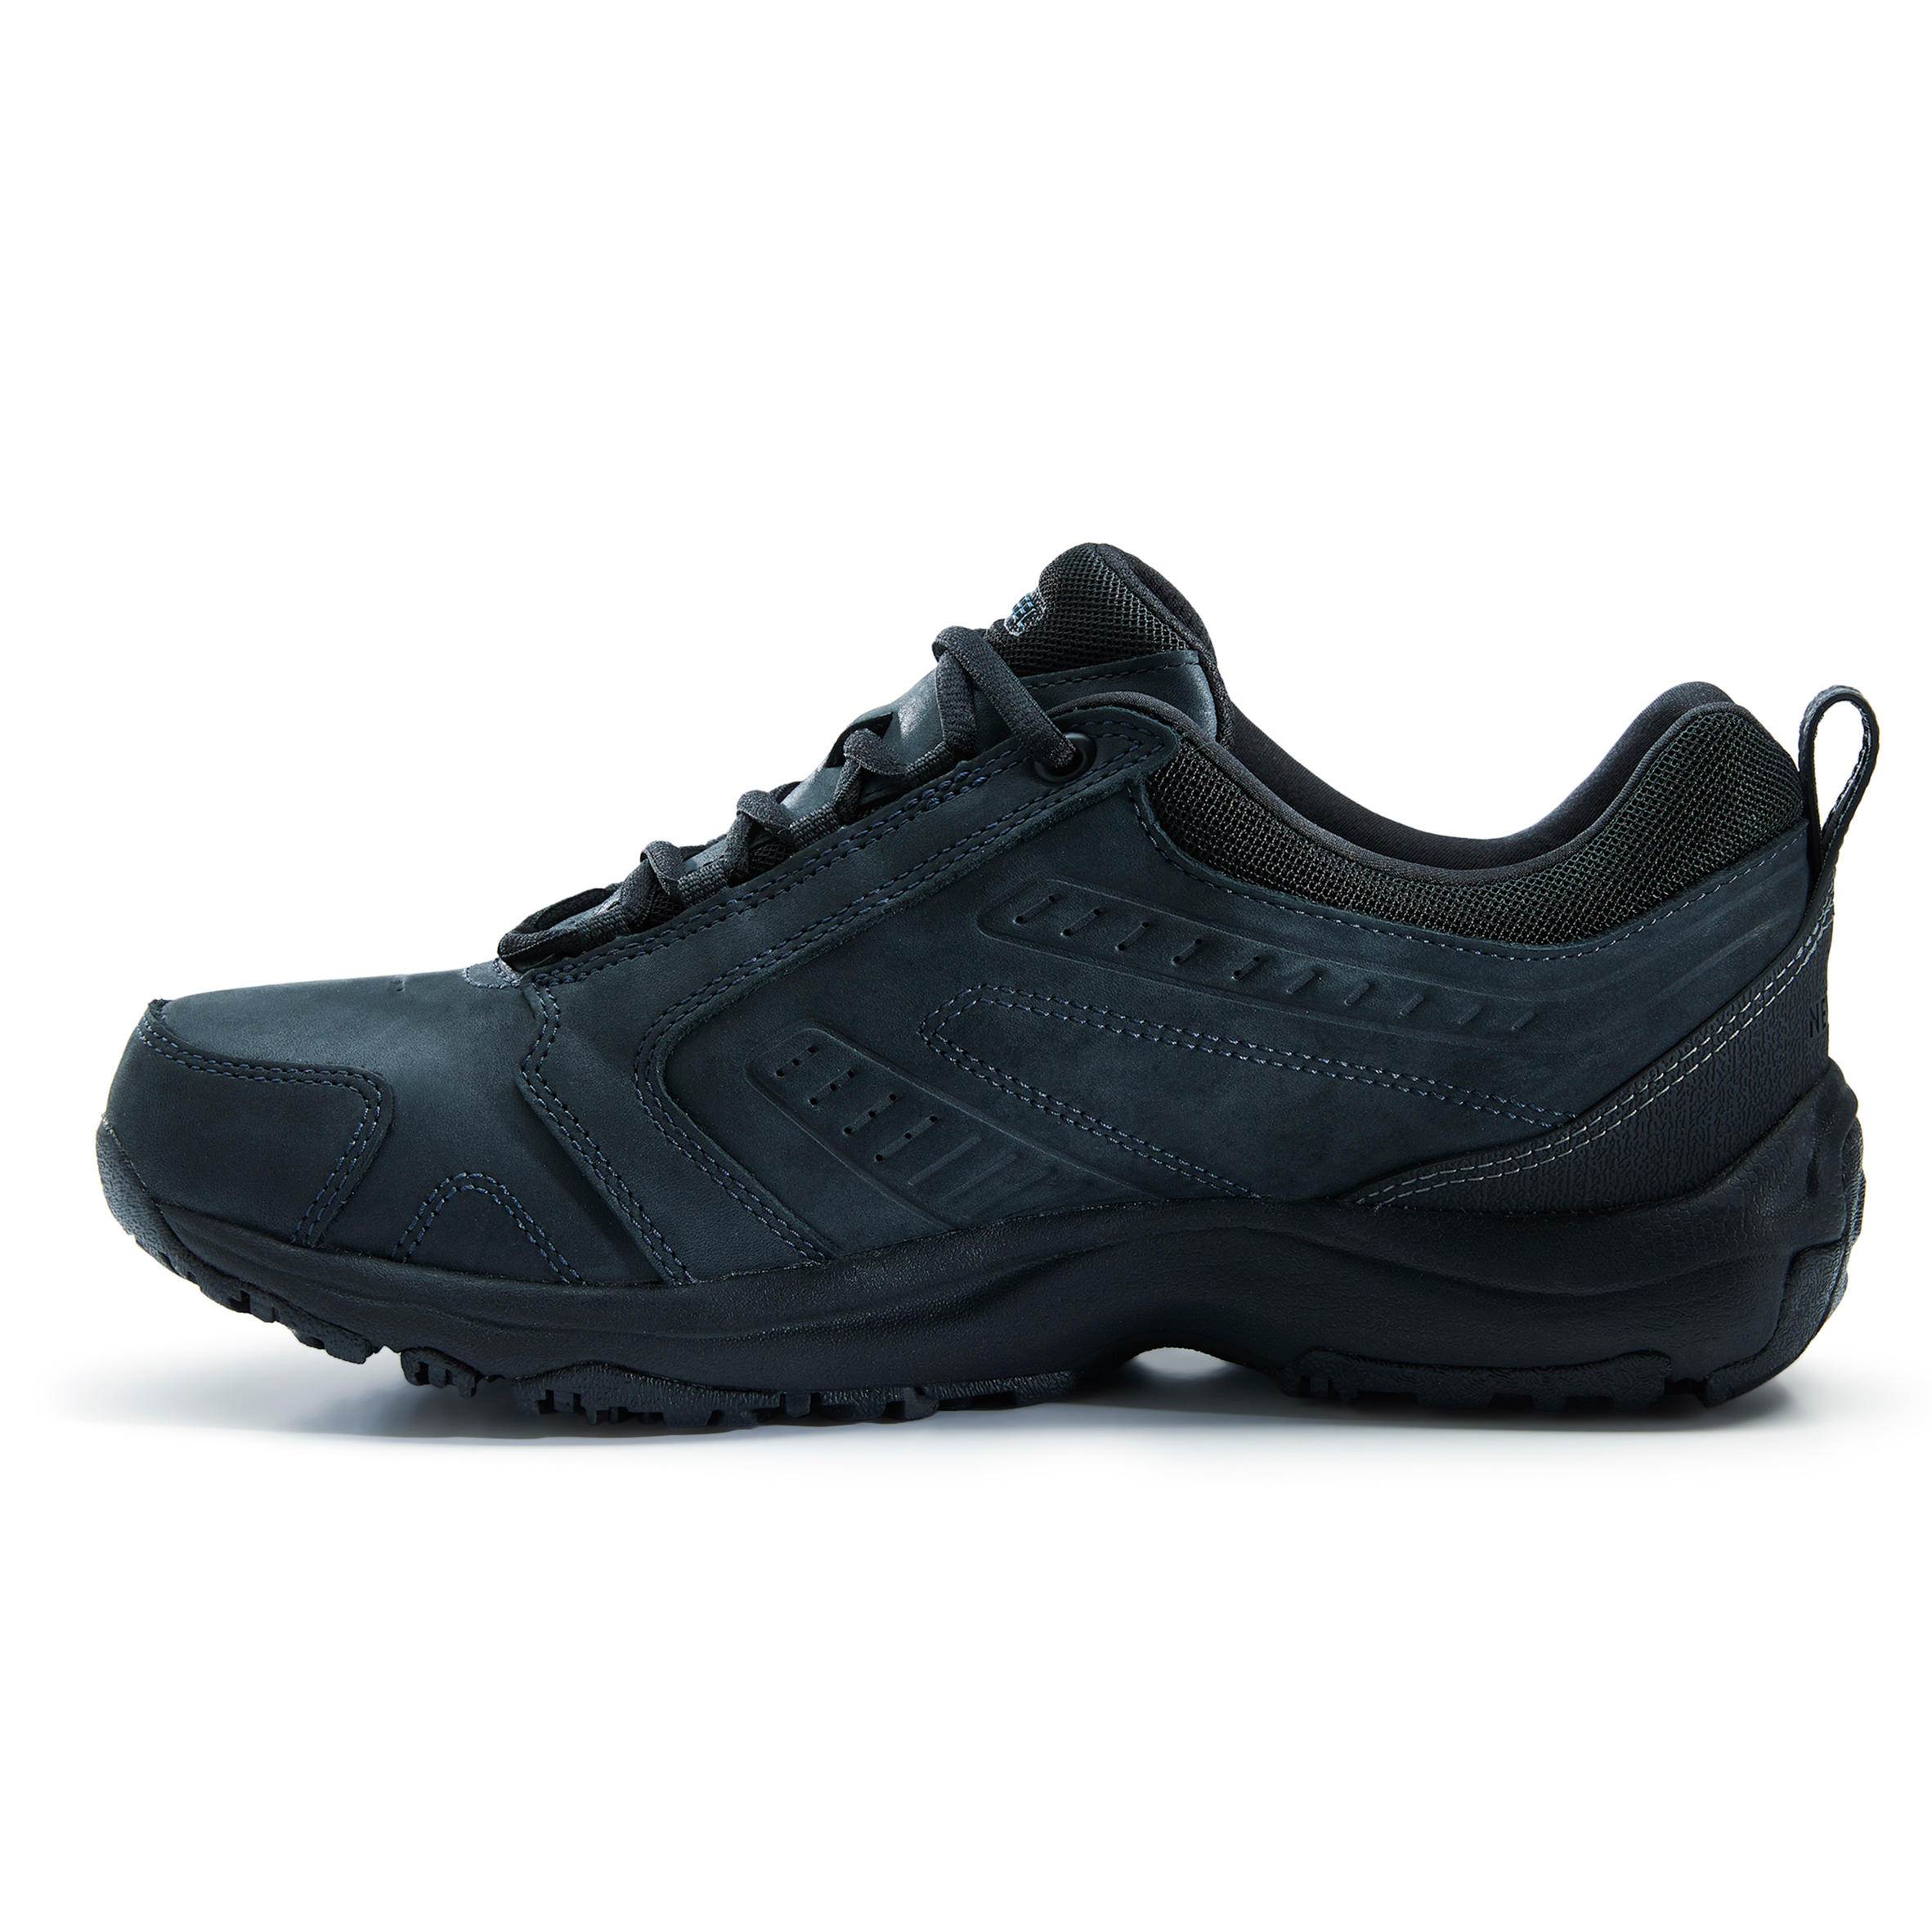 Nakuru Waterproof Men's Urban Waterproof Walking Shoes - Black Leather 15/25